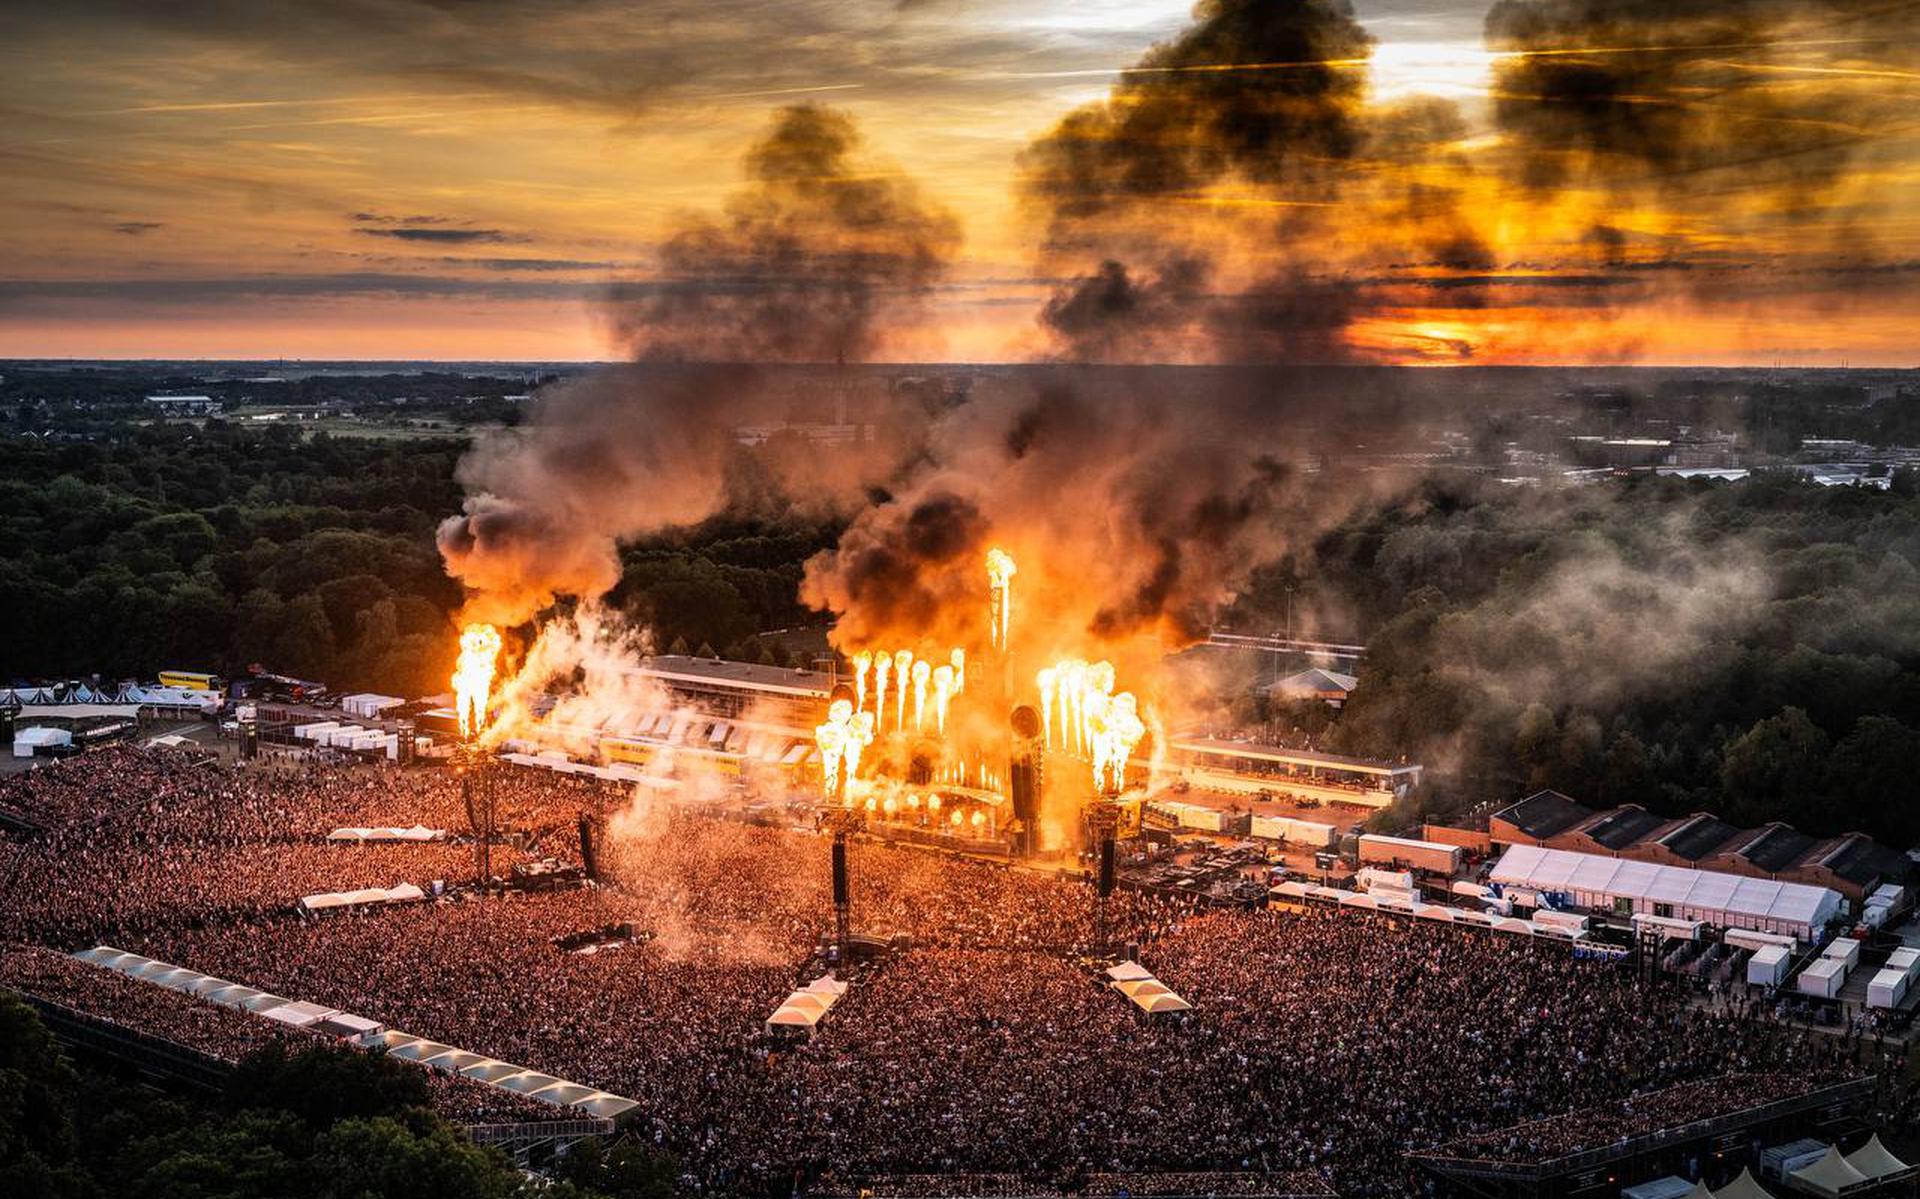 Sehen Sie sich die Fotos an: Rammstein bringt Groningen mit einer theatralischen und spektakulären Rockshow der Weltklasse in Brand